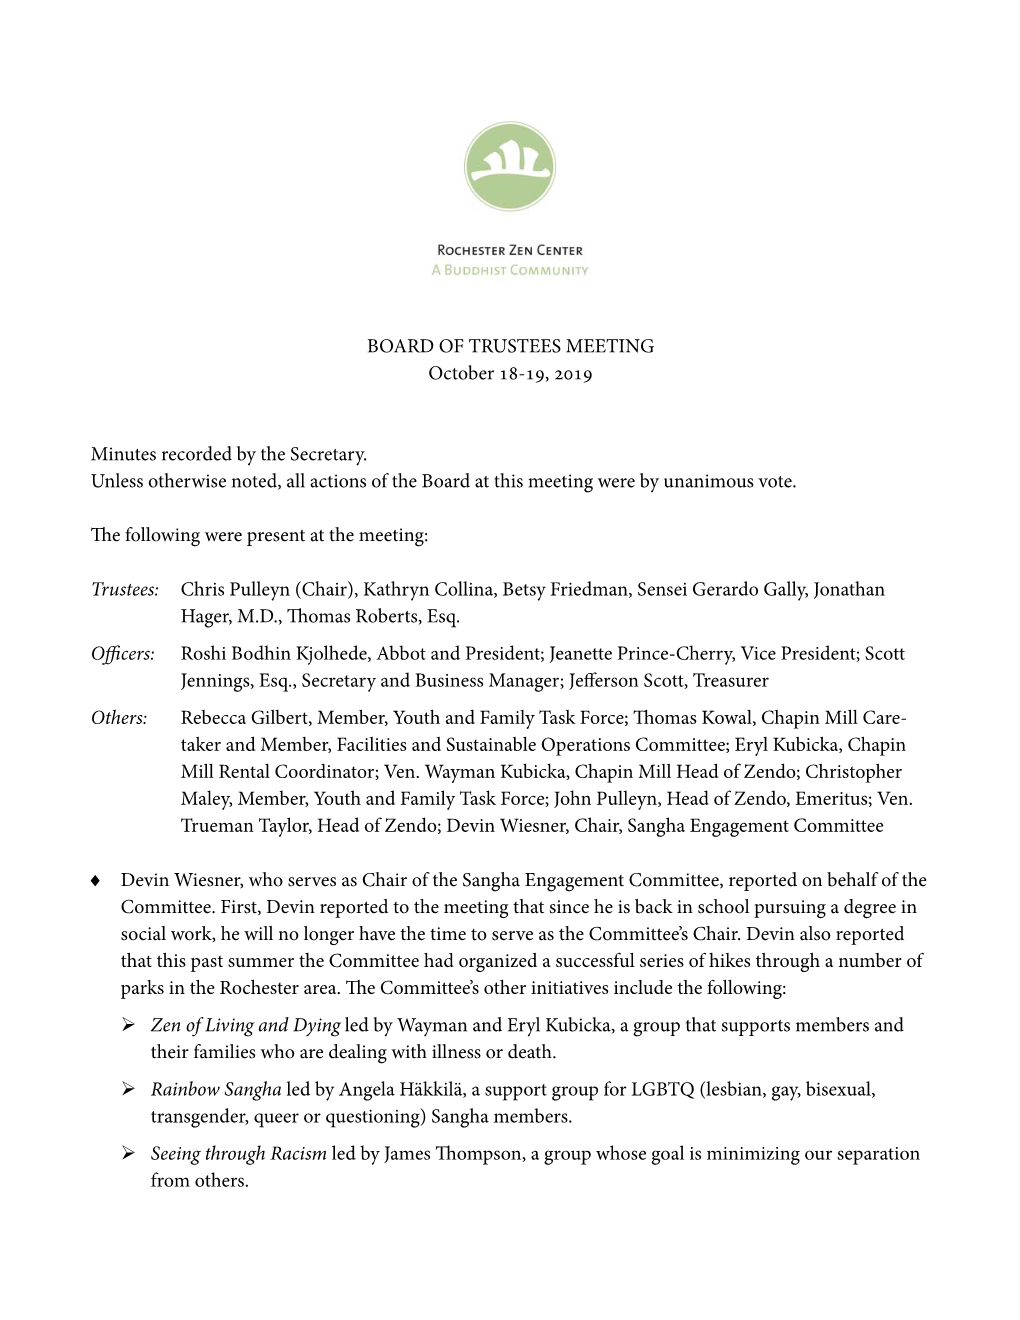 Minutes, Rochester Zen Center Board of Trustees Meeting, October 18-19, 2019